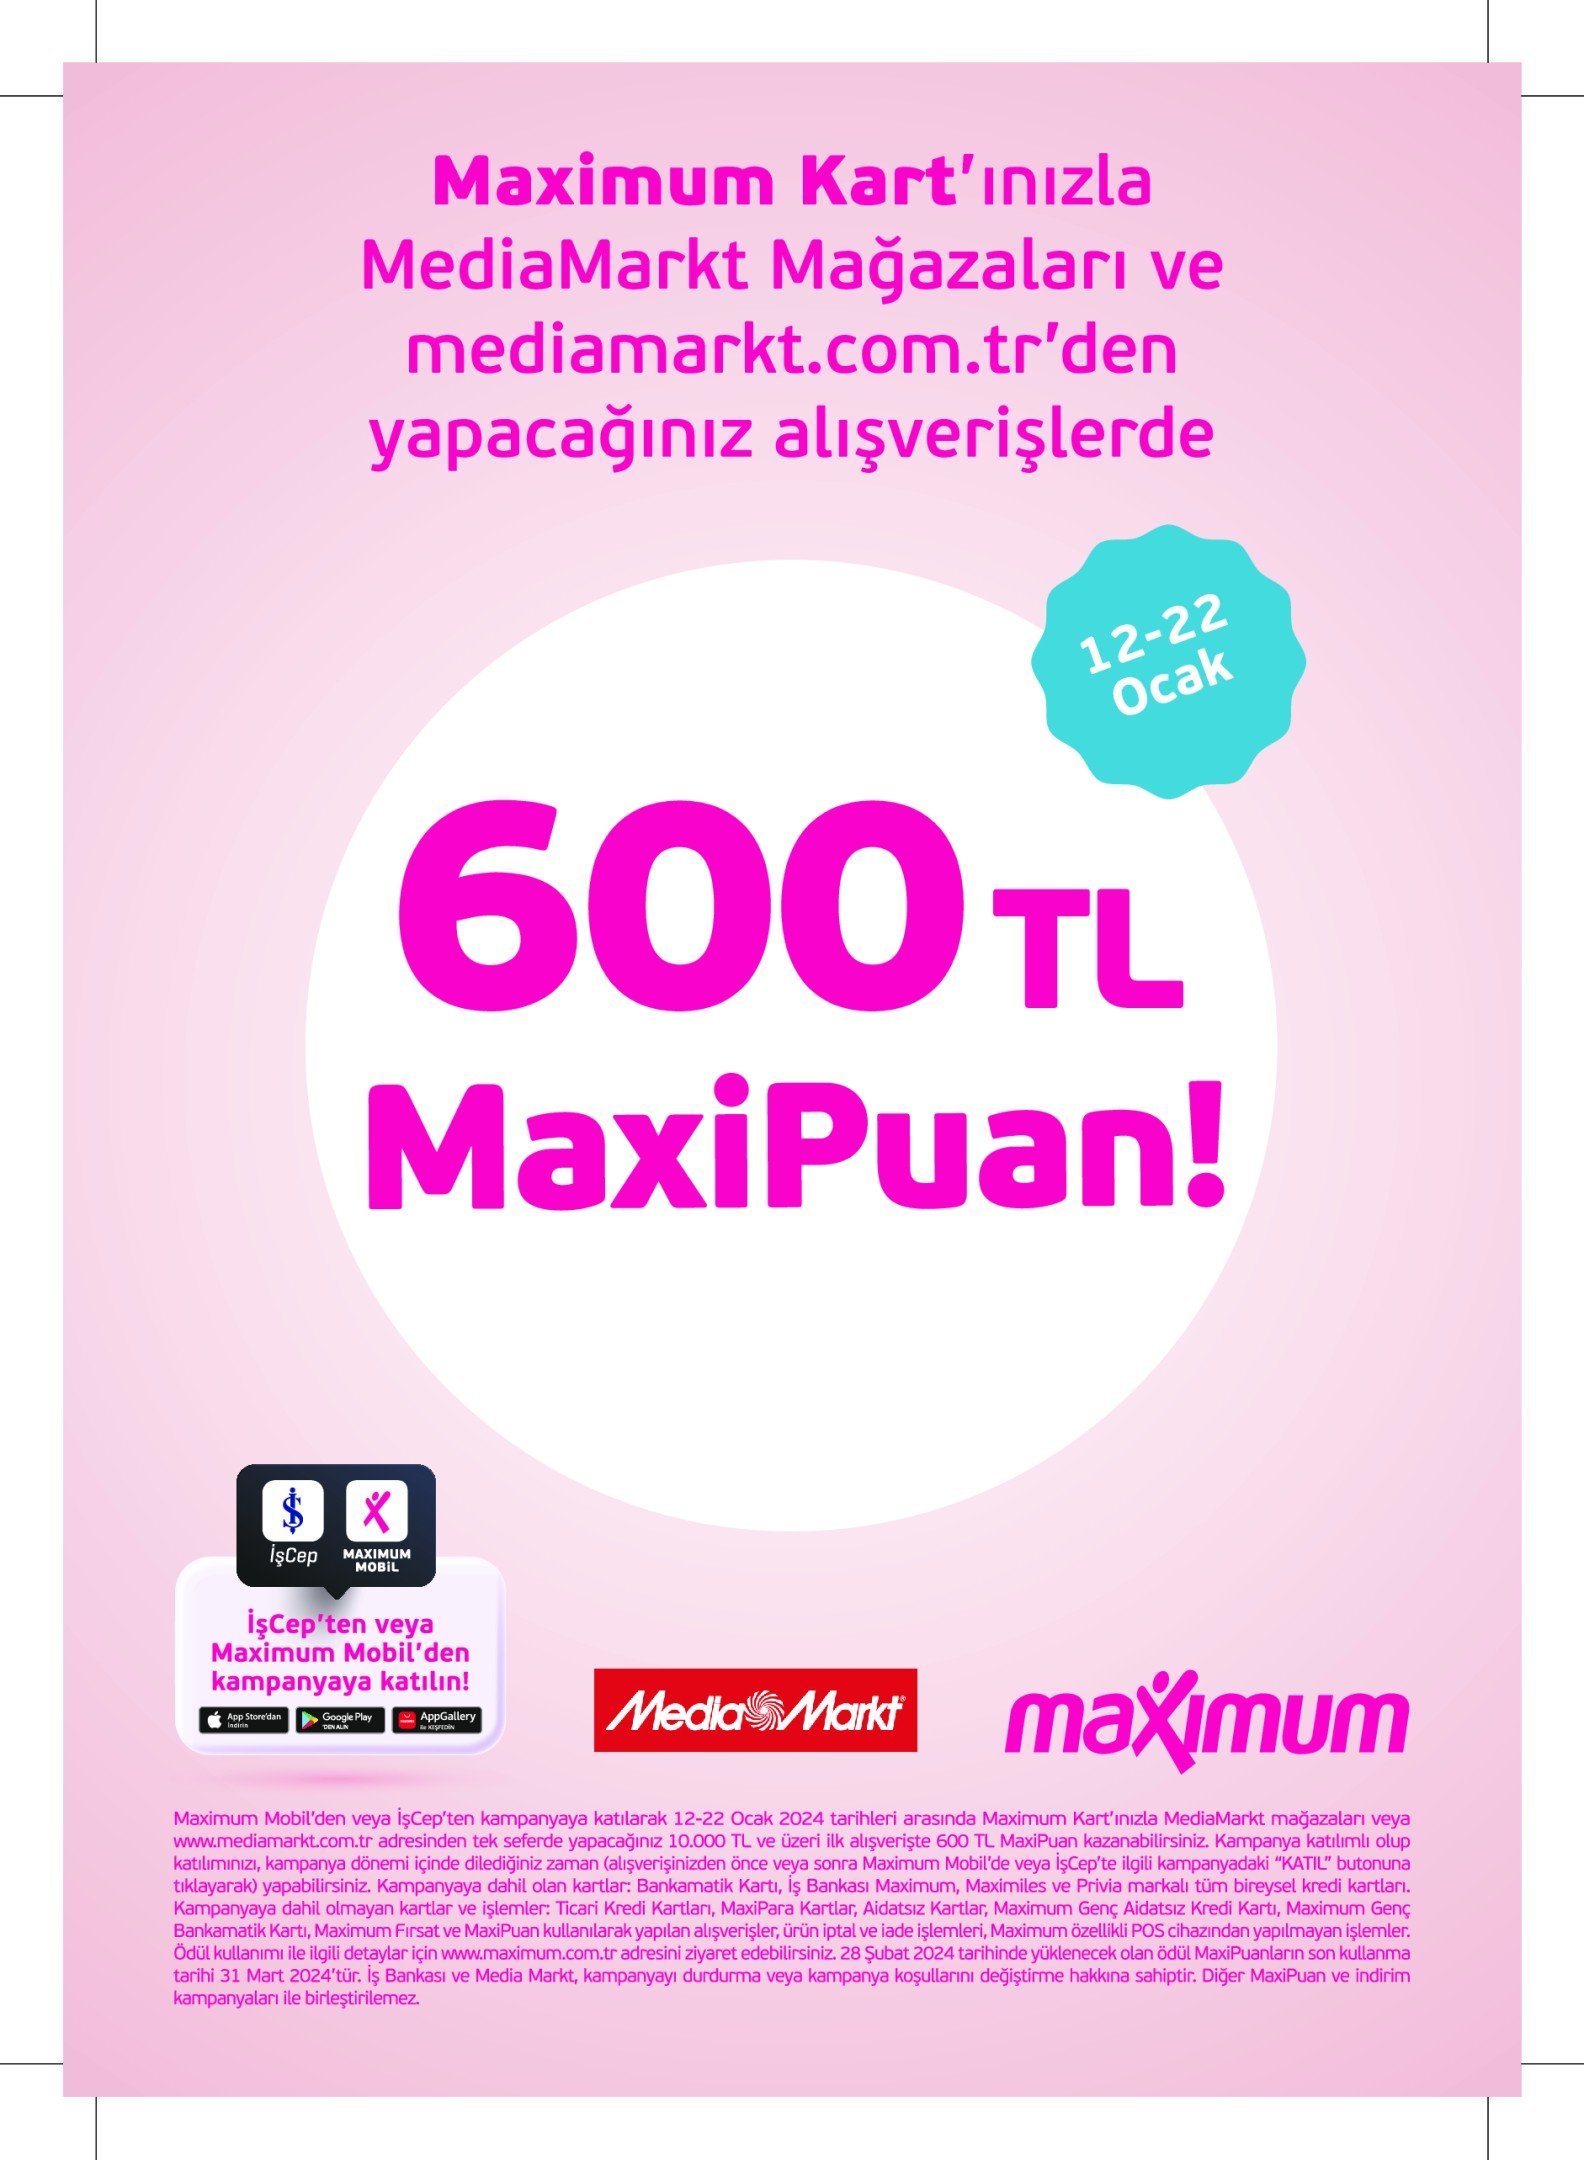 mediamarkt MaxiPuan